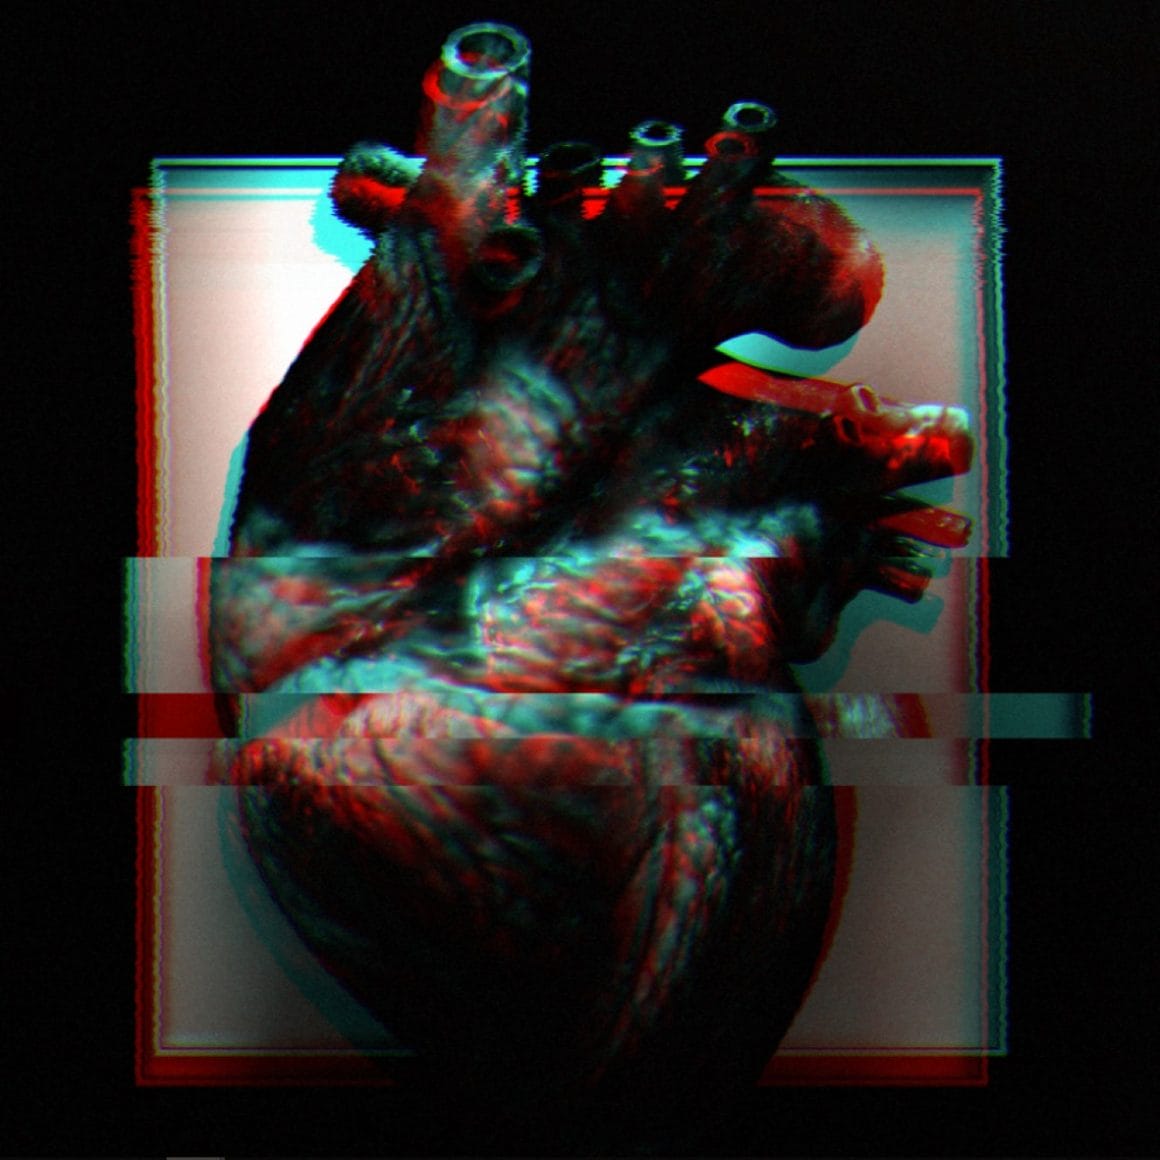 Photographie du projet A living heart réalisé par ParseError